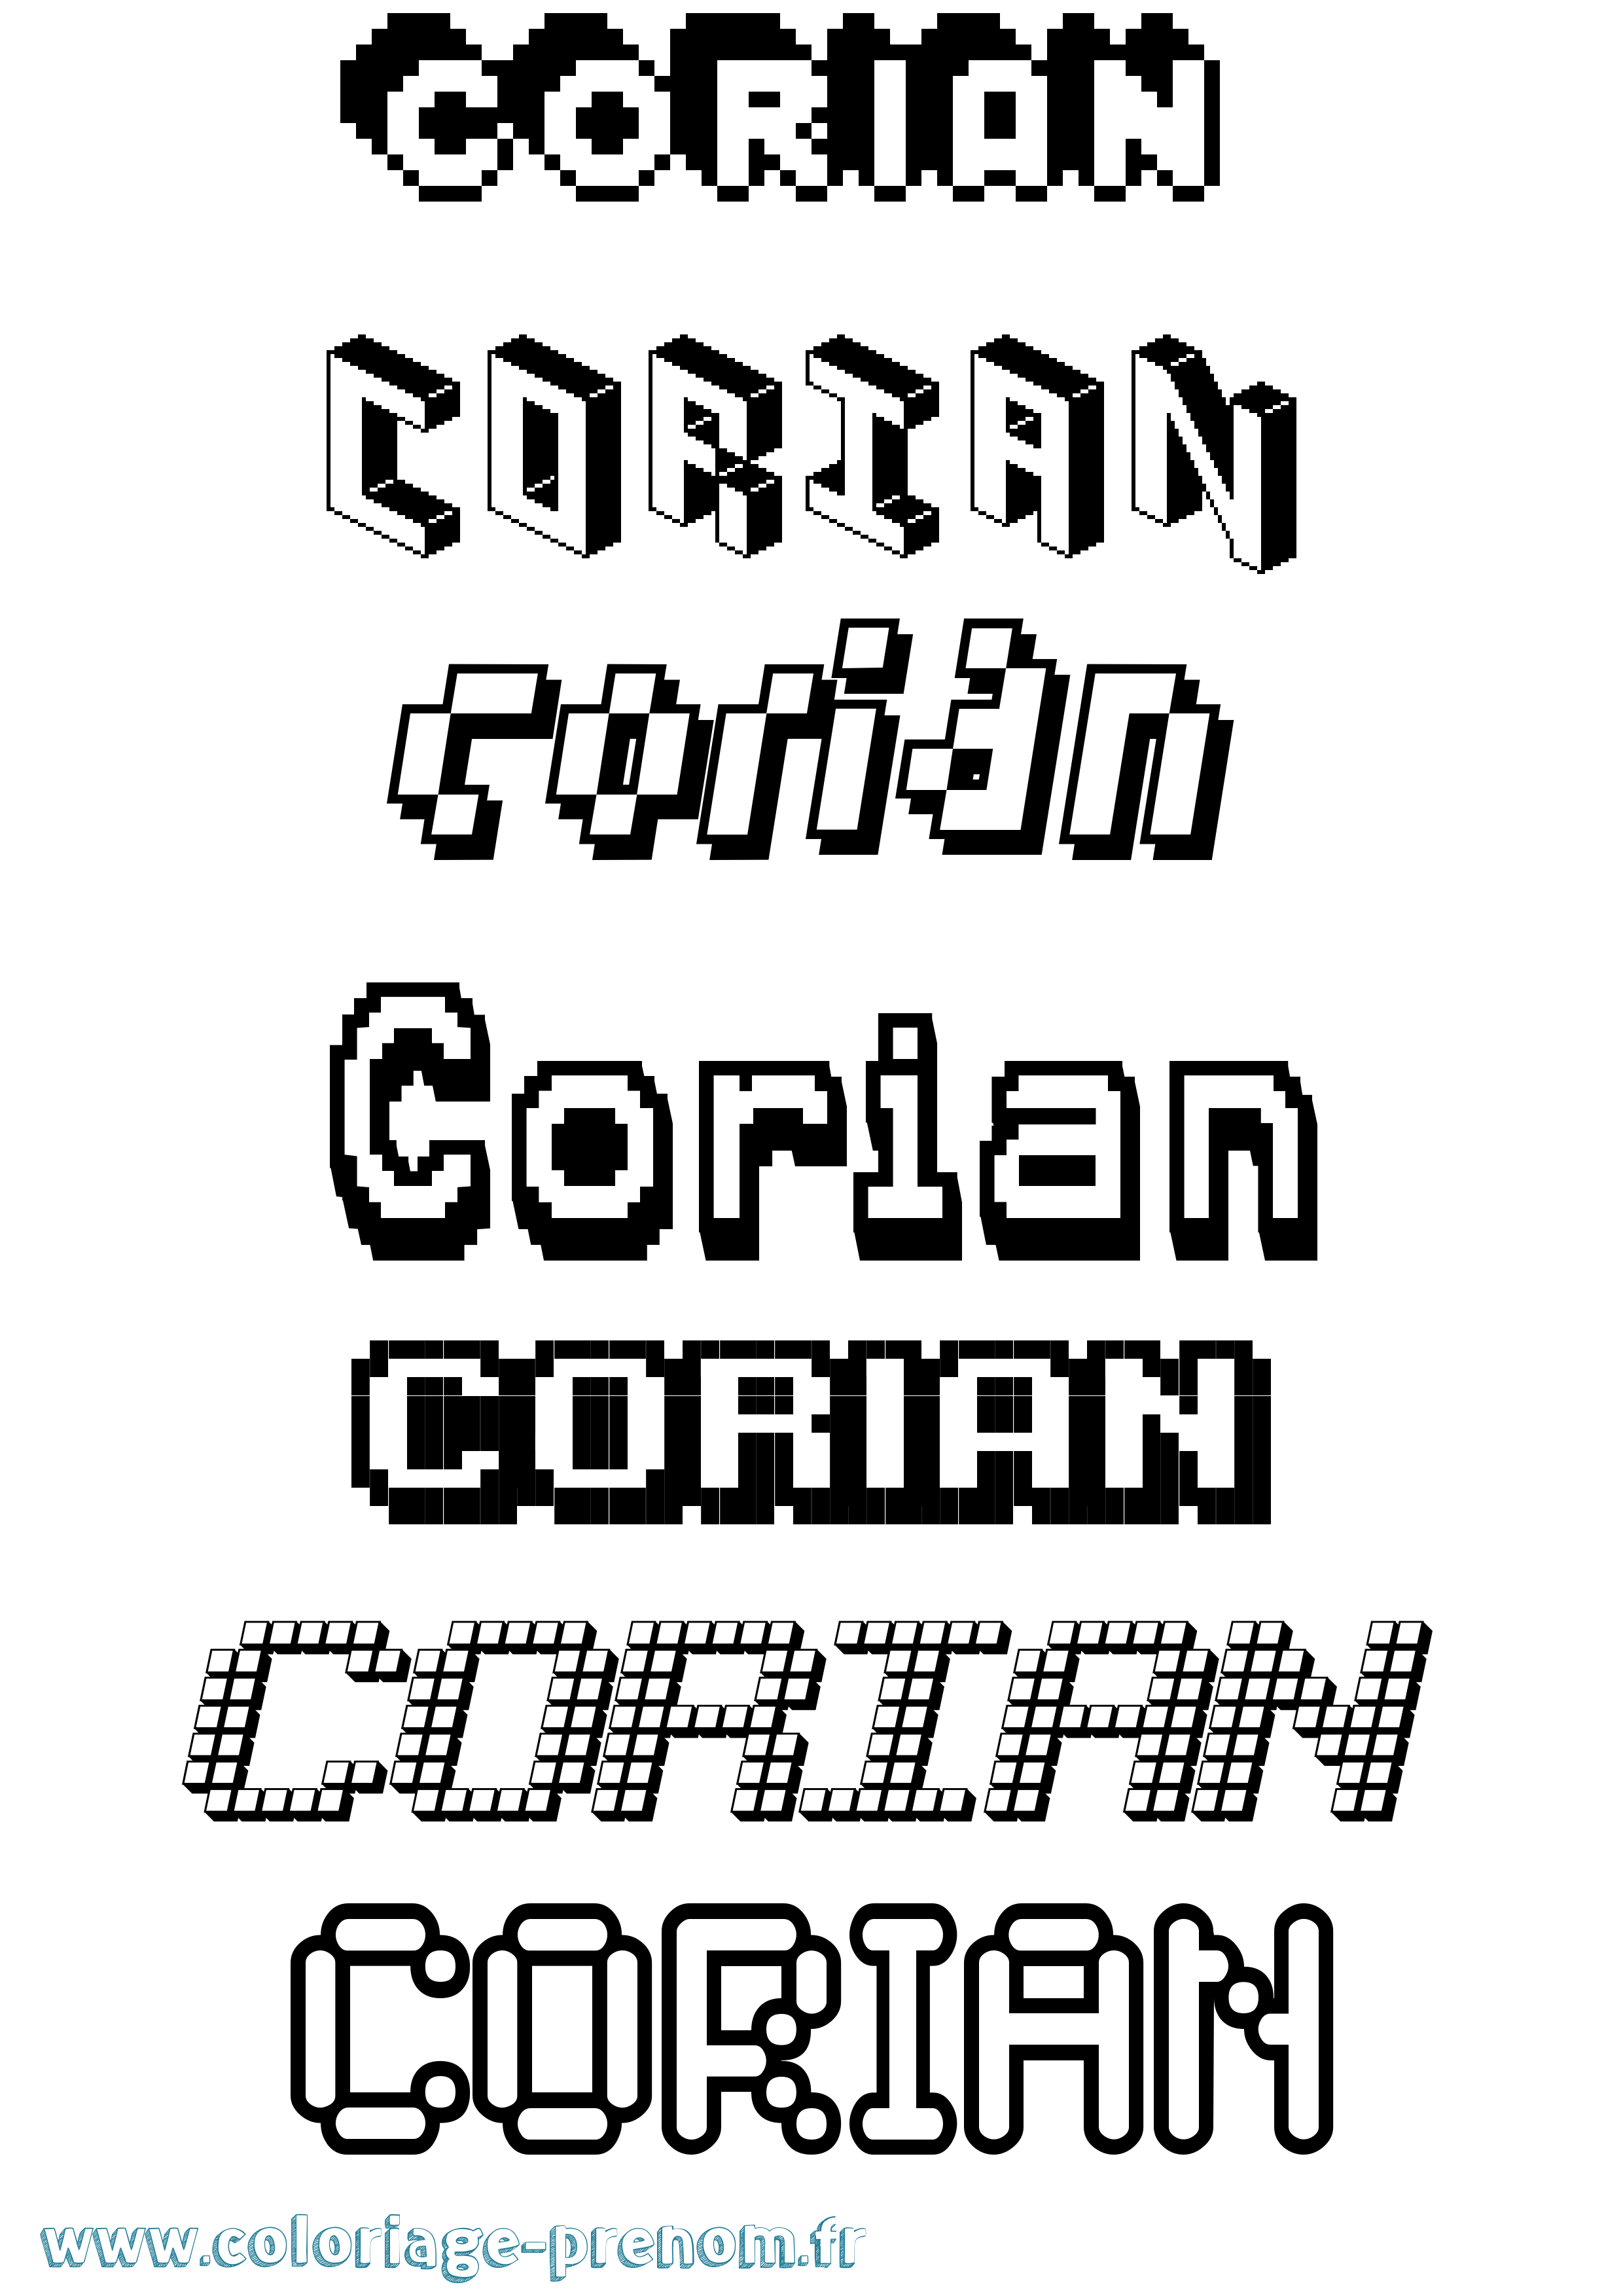 Coloriage prénom Corian Pixel